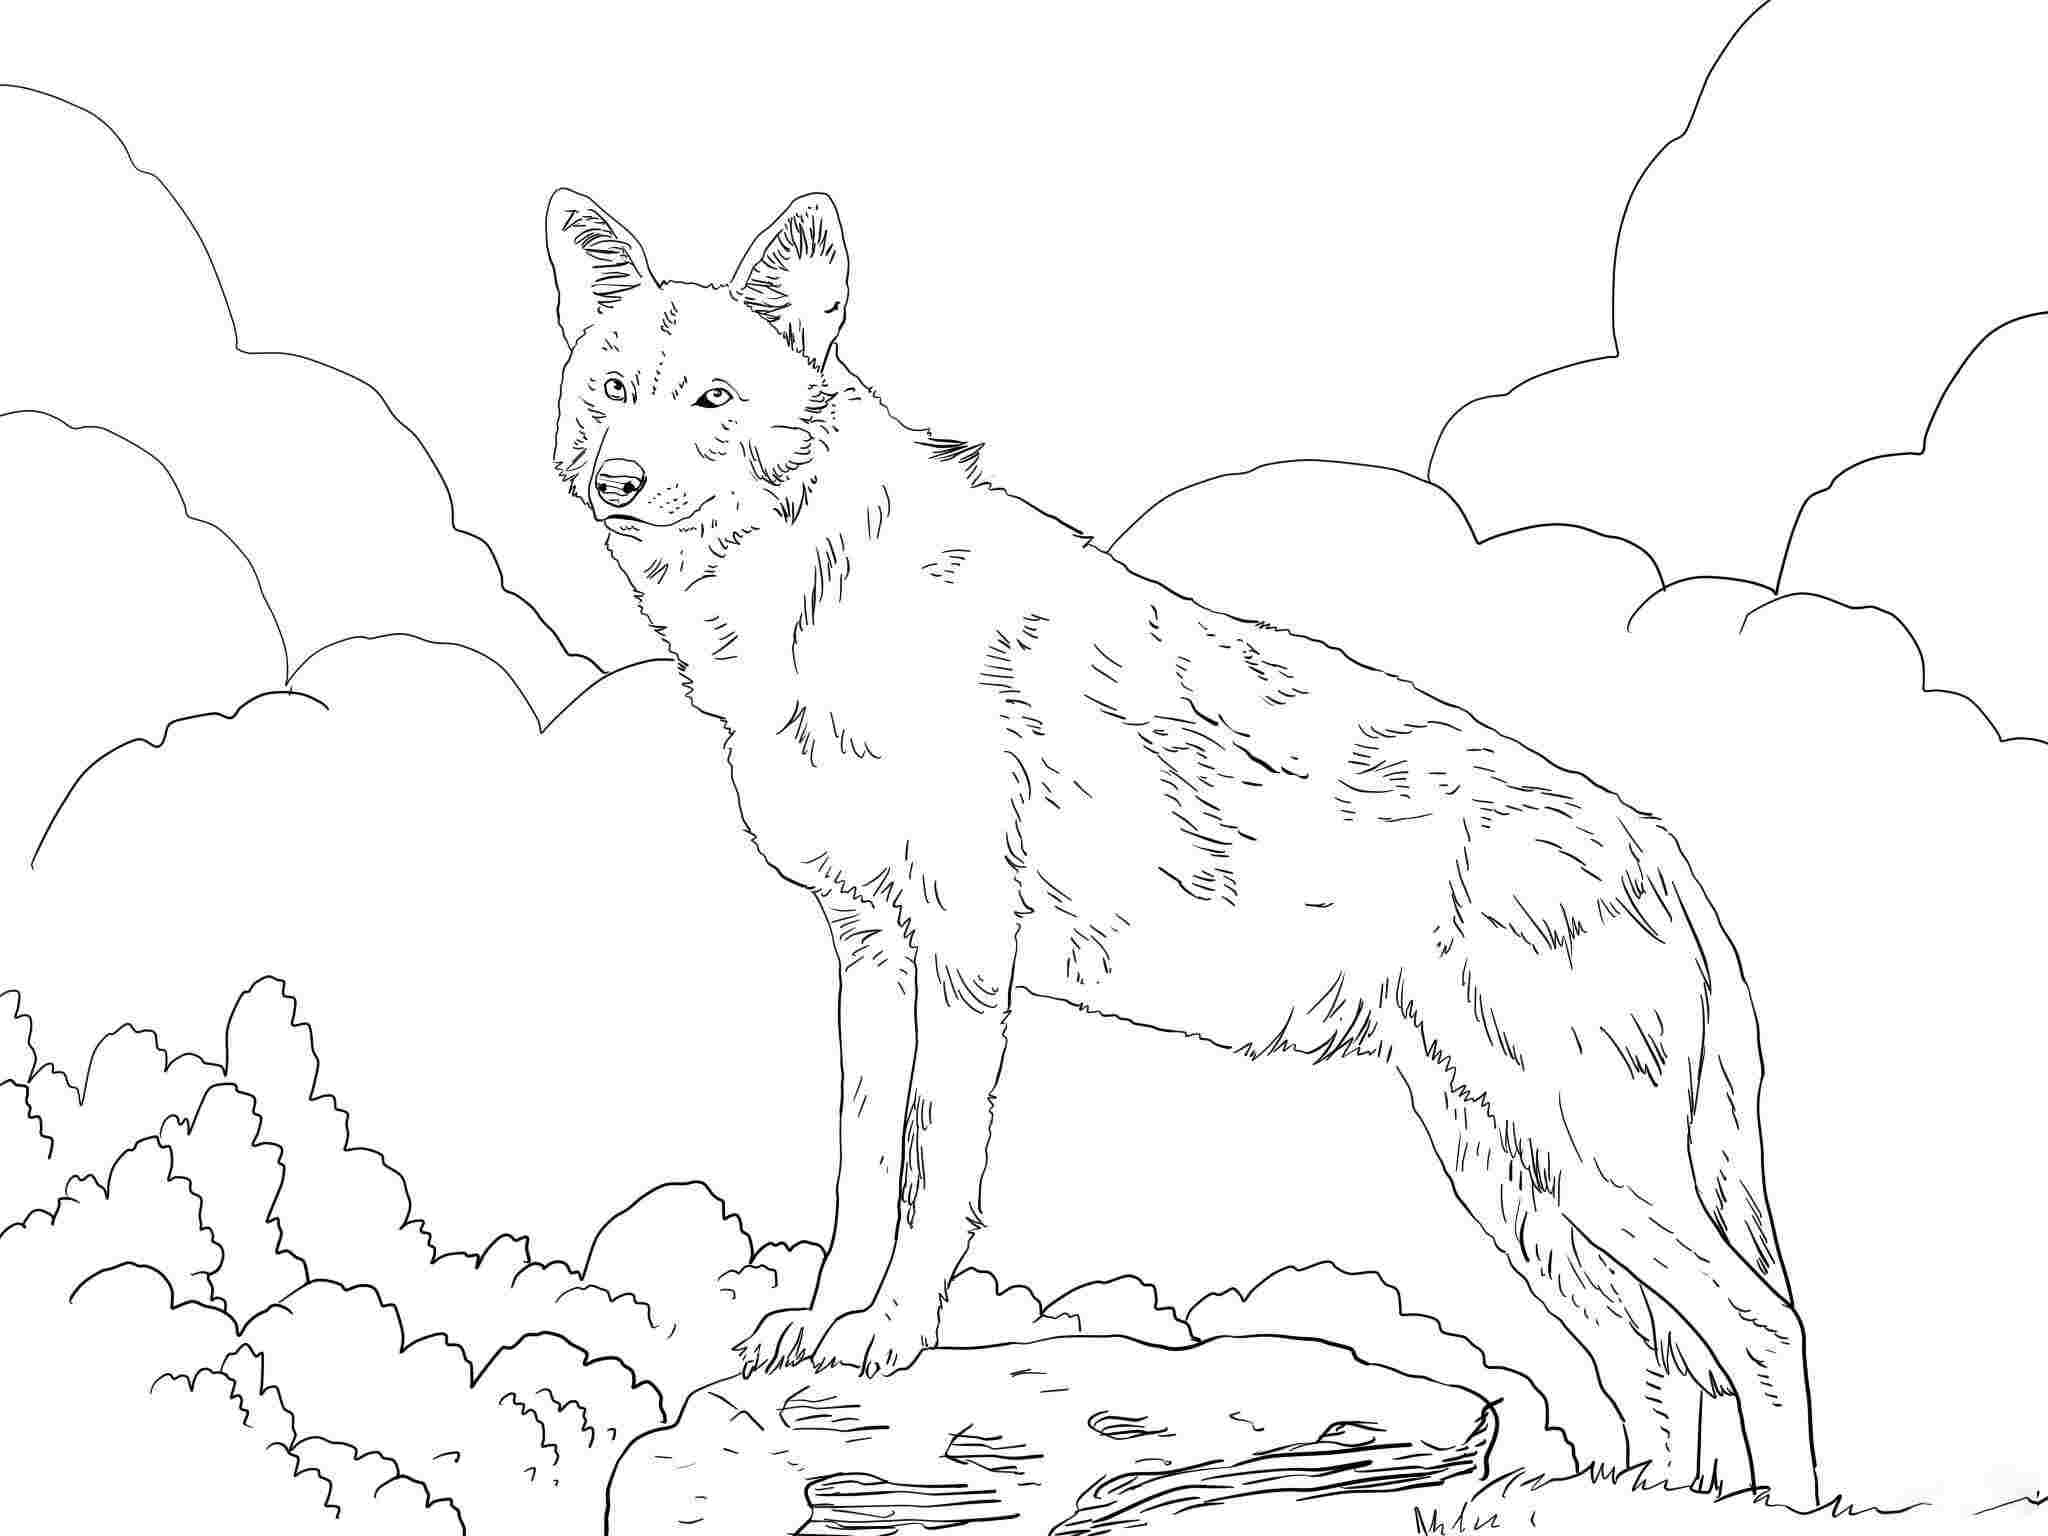 Noord-Amerikaanse rode wolf staande op de rand van Wolf